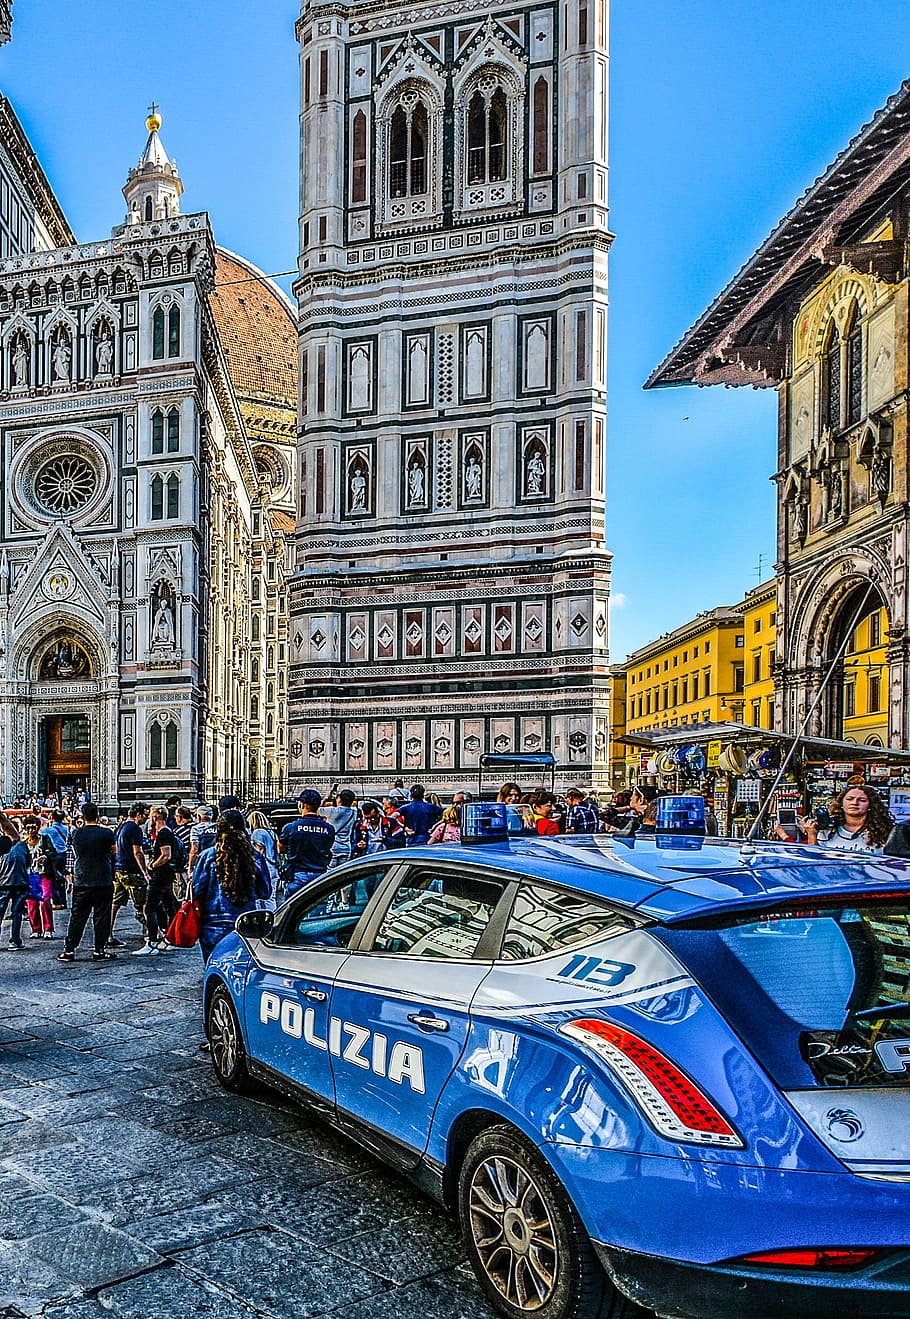 Florença, Itália, Italiano, Rua, Polícia, Polizia, viagem, Marco, Duomo, cidade